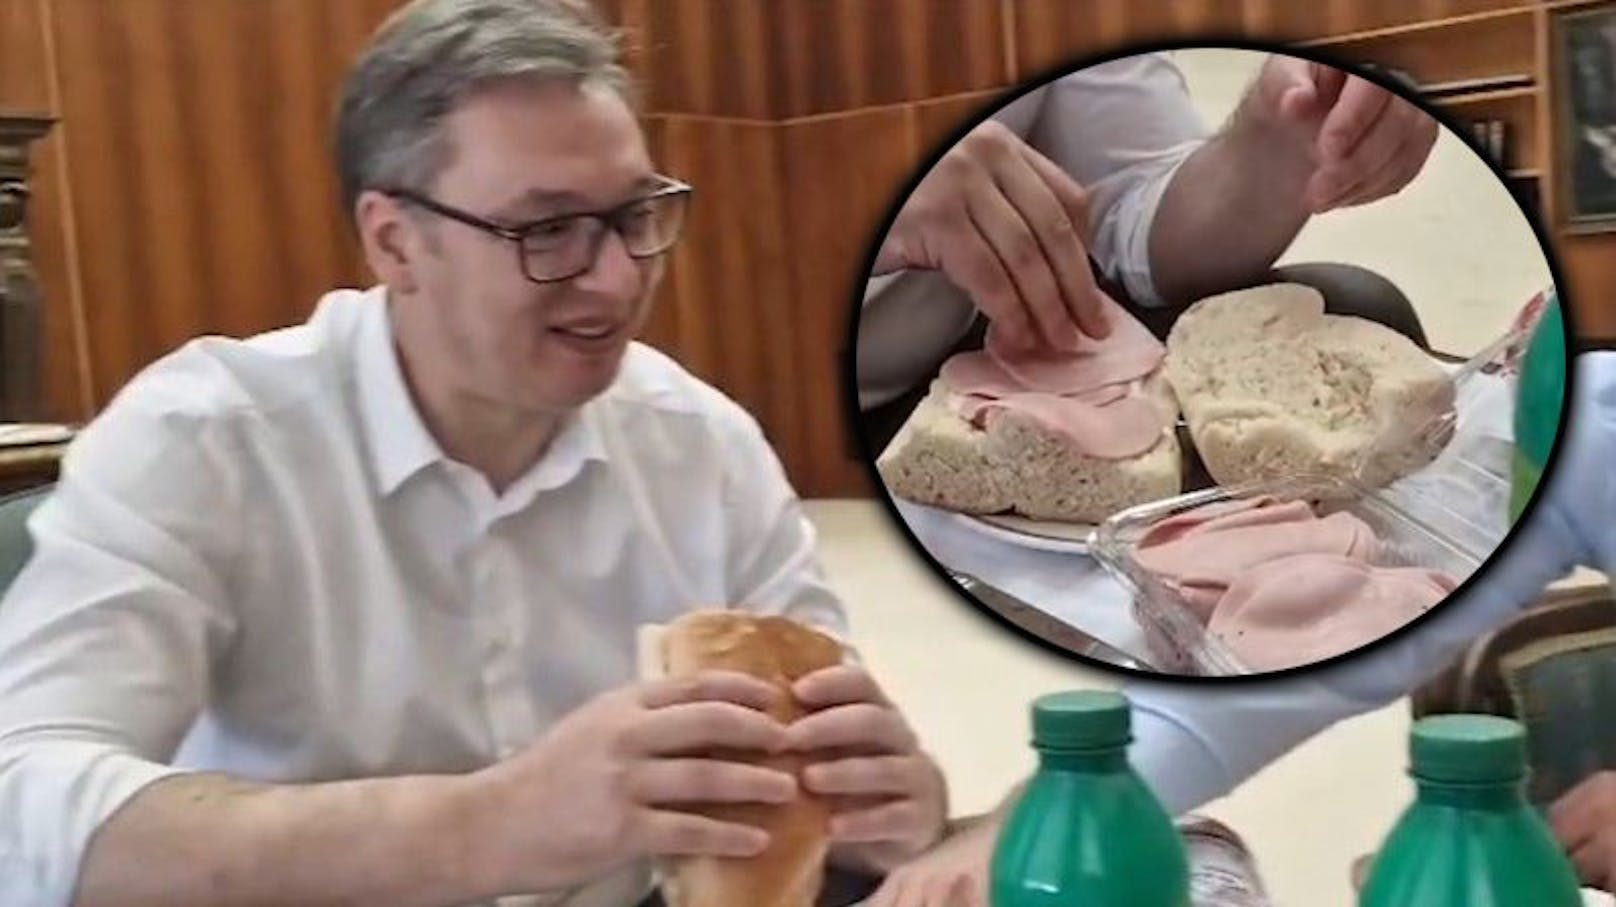 Ein bizarres Frühstücks-Video von Serbiens Präsidenten schlägt im Netz hohe Wellen.